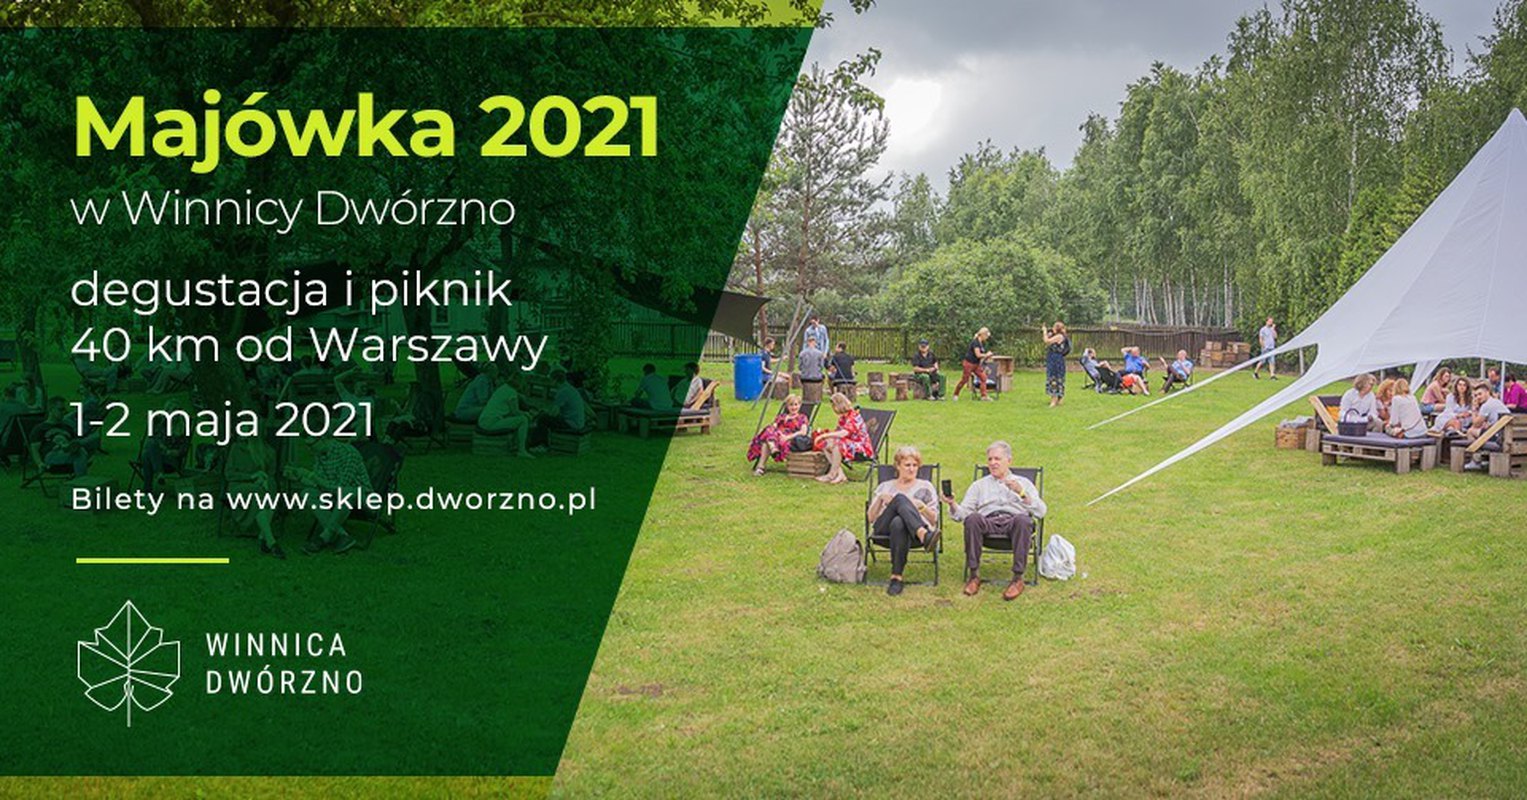 Majówka 2021 w Winnicy Dwórzno - degustacja i piknik 40 km od Warszawy